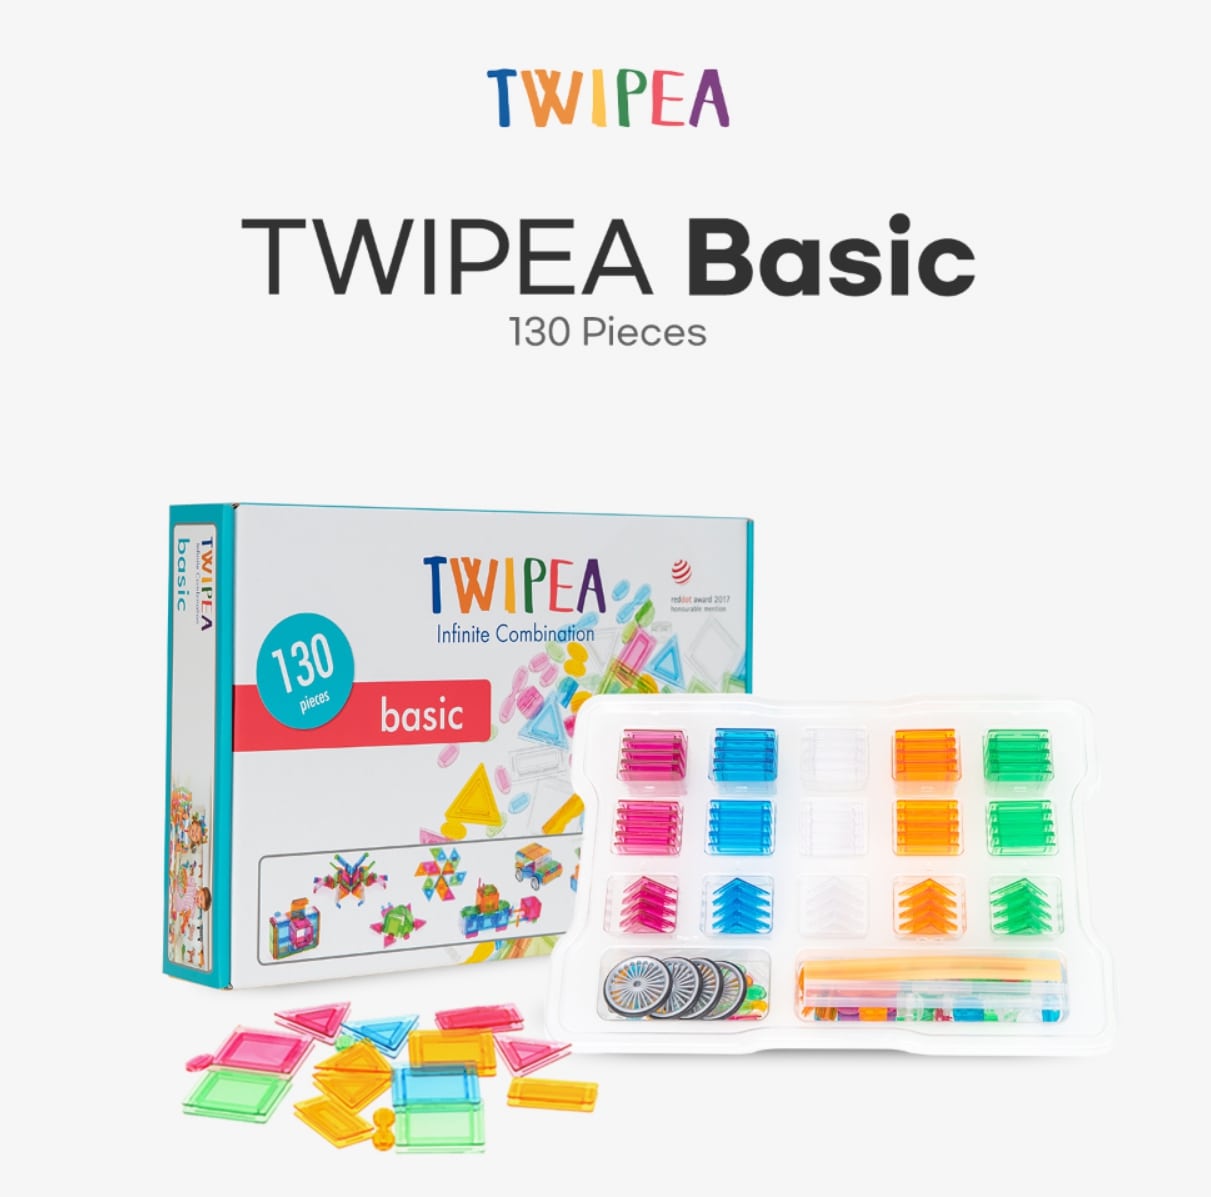 TWIPEA Educational Toy Block BASIC Set _compatible with lego blocks_ 130pcs